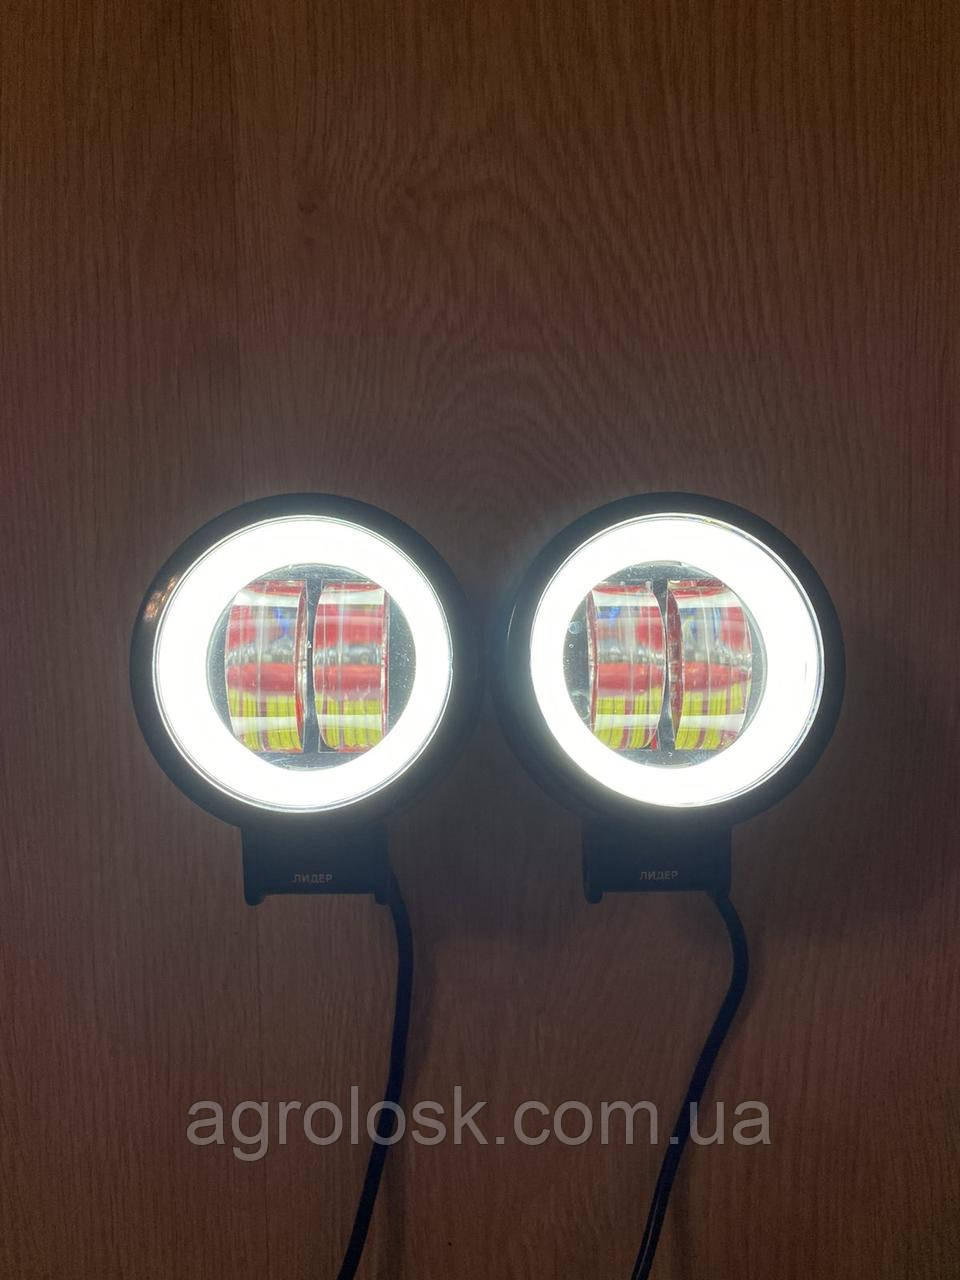 Заказать Самые яркие LED фары 20 W светодиодные Лэд не слепят встречных СТГ  круглые по доступной цене от ⭐️ "АГРОЛОСК" - 1354544615